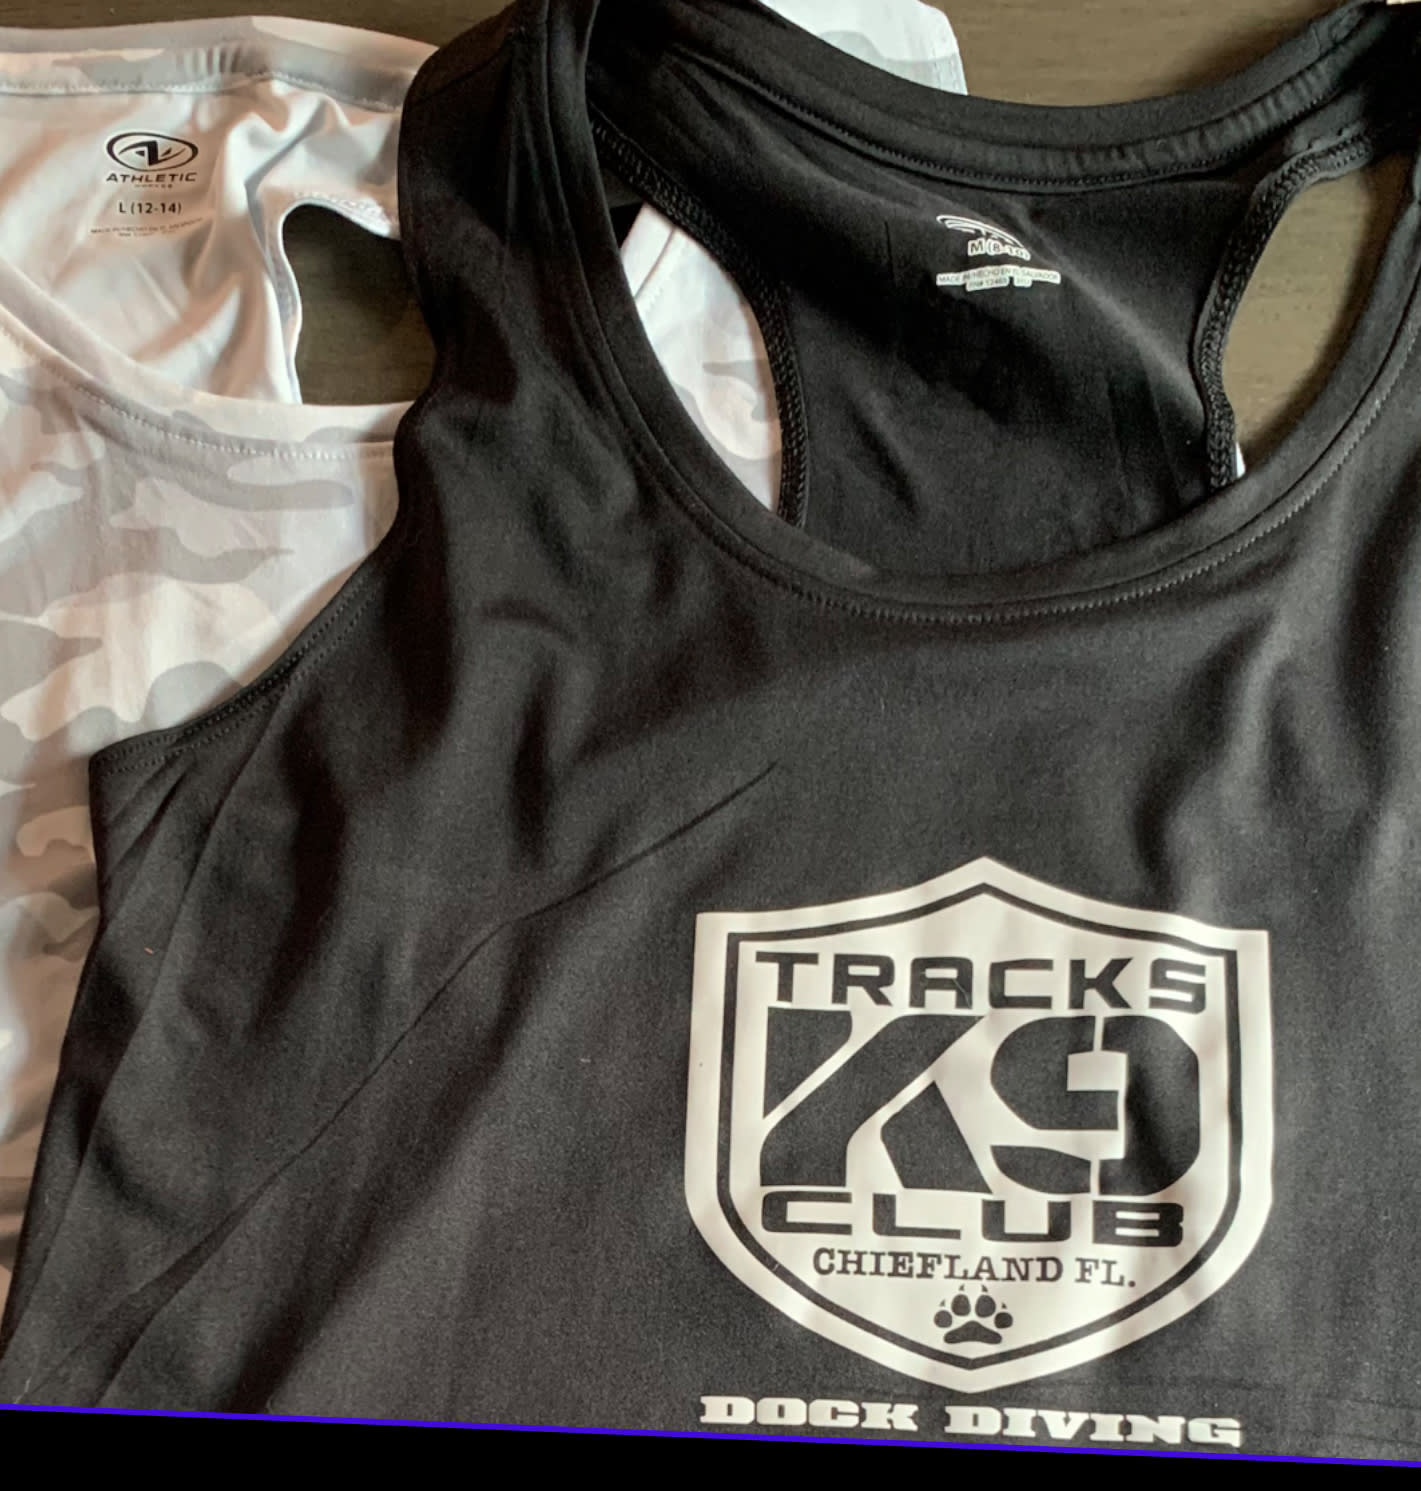 BLACK Tank-Tops - TRACKS SWAG - Tracks K9 Club